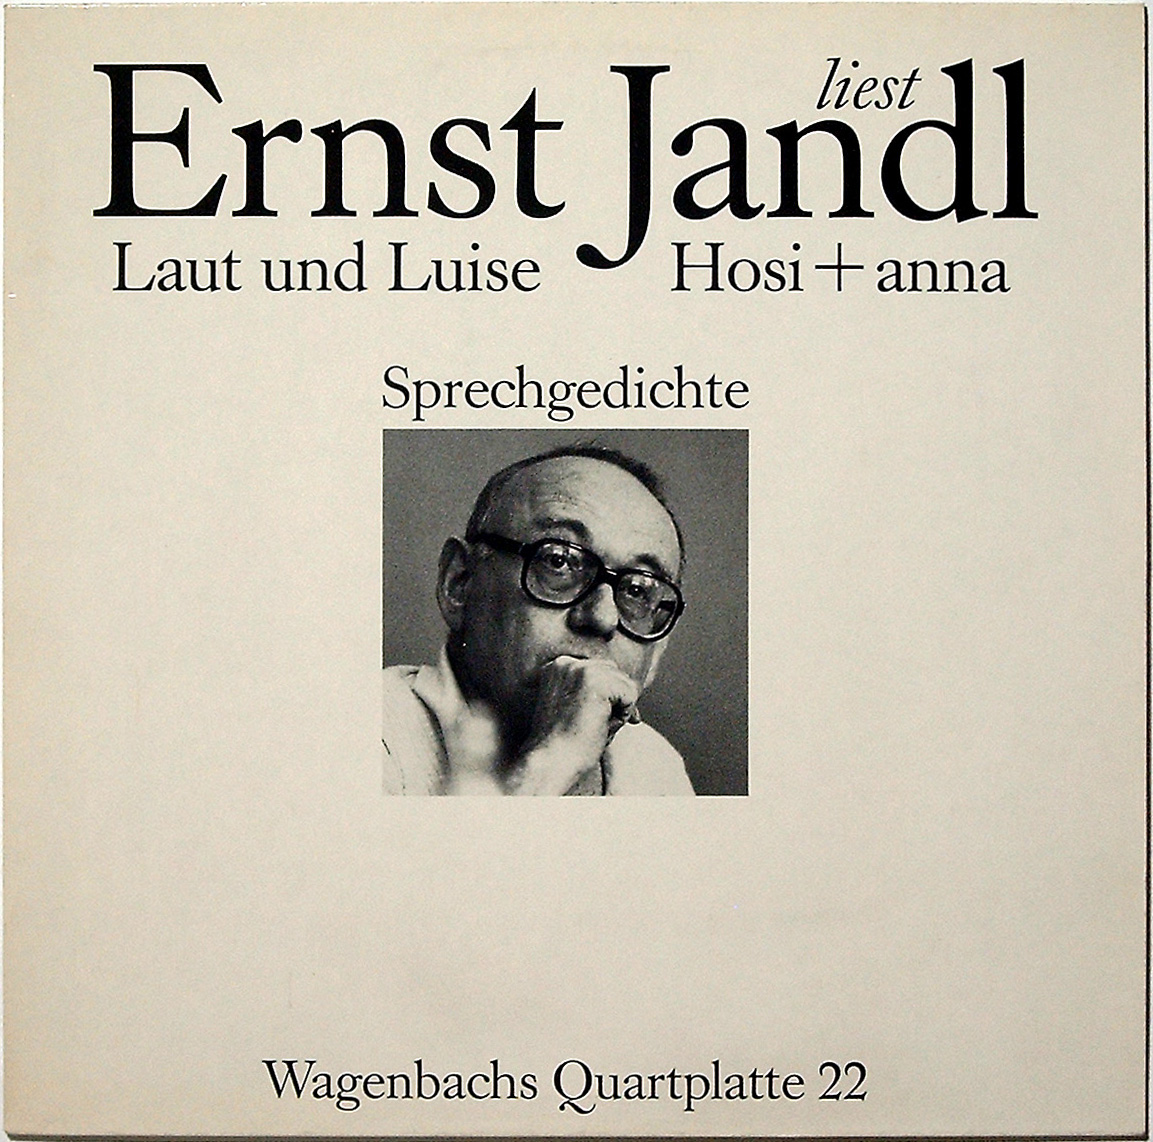 Ernst Jandl